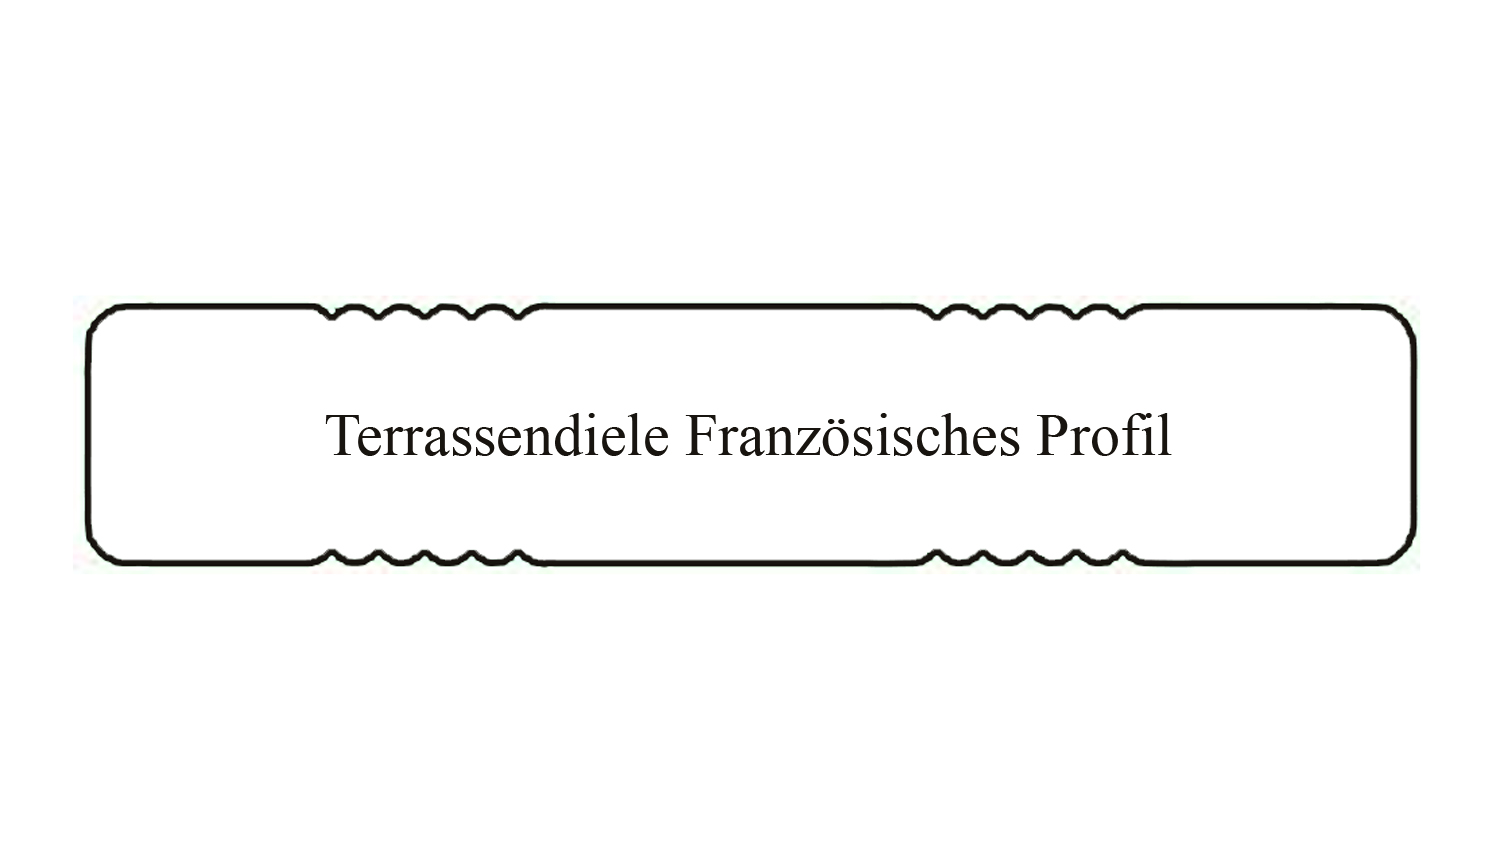 SALE Terrassendiele sib. Lärche 27x143mm, Länge 3,00m, beids. franz. Profil, VEH A/B